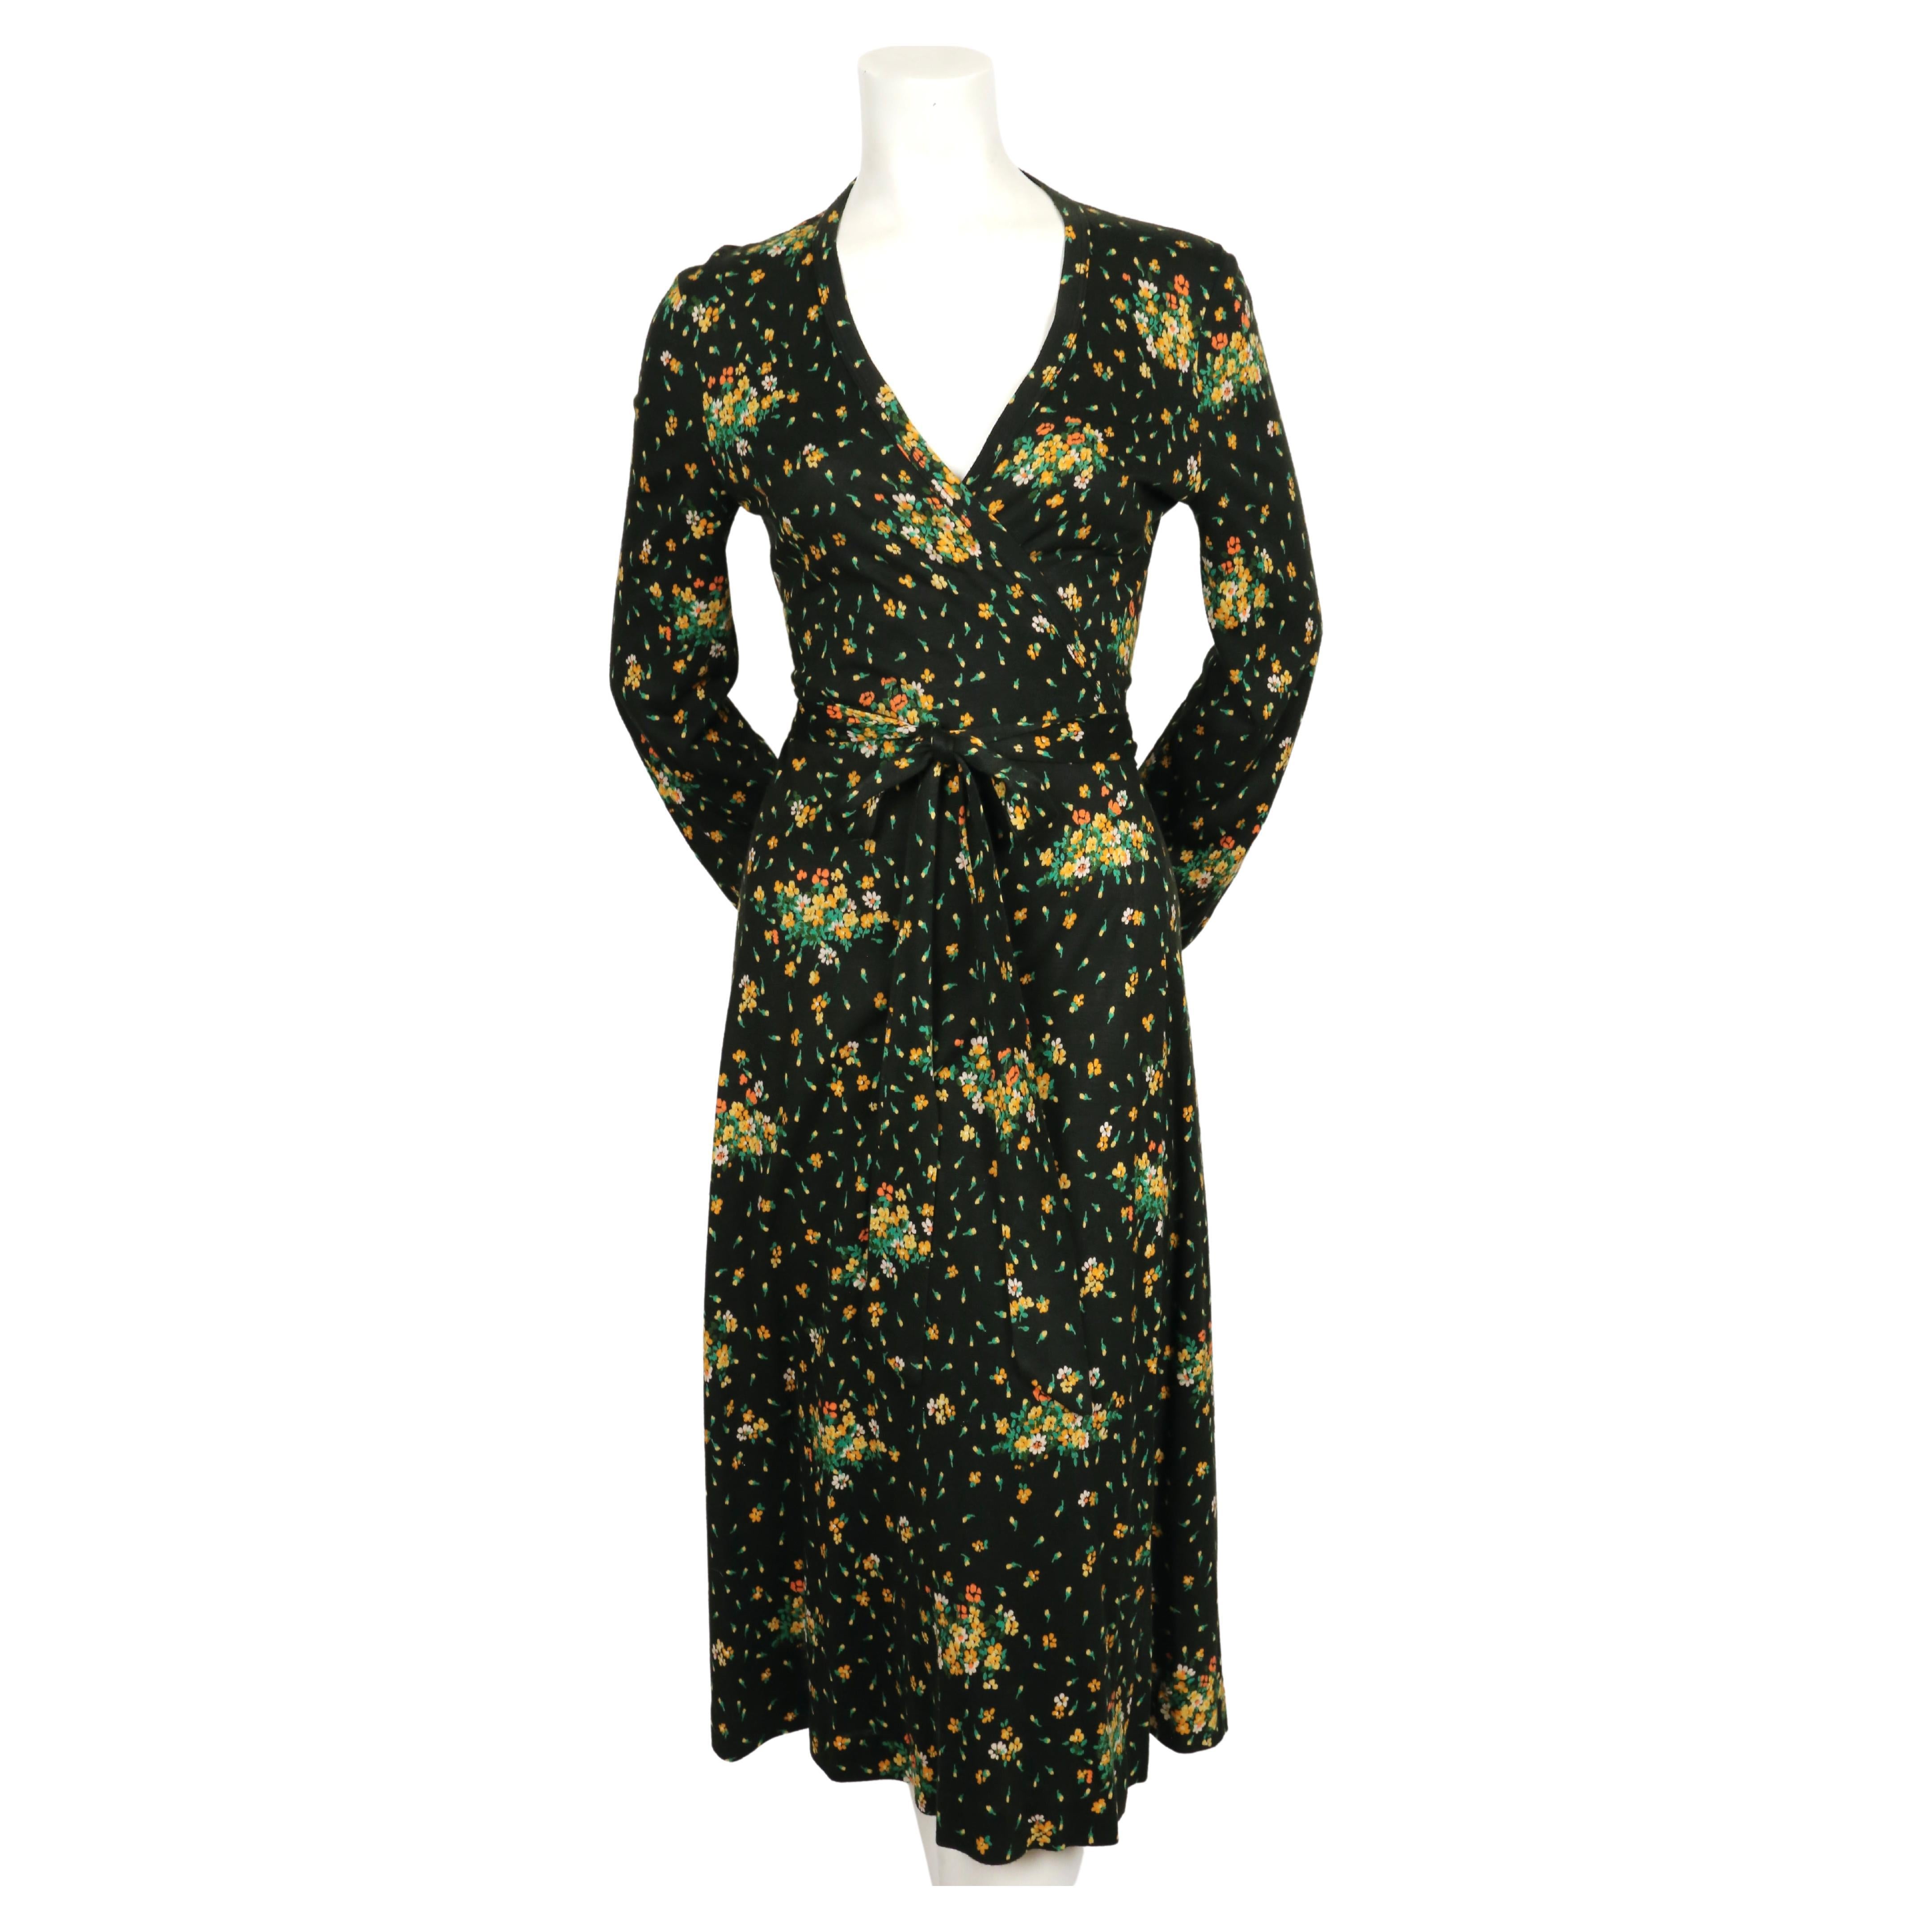 Robe portefeuille noire à imprimé floral de Diane Von Furstenberg datant des années 1970. Taille Vintage 10 mais cette taille est beaucoup plus petite. La robe n'était pas clipsée sur le mannequin taille 2. Convient le mieux à une taille de 4 à 6. 